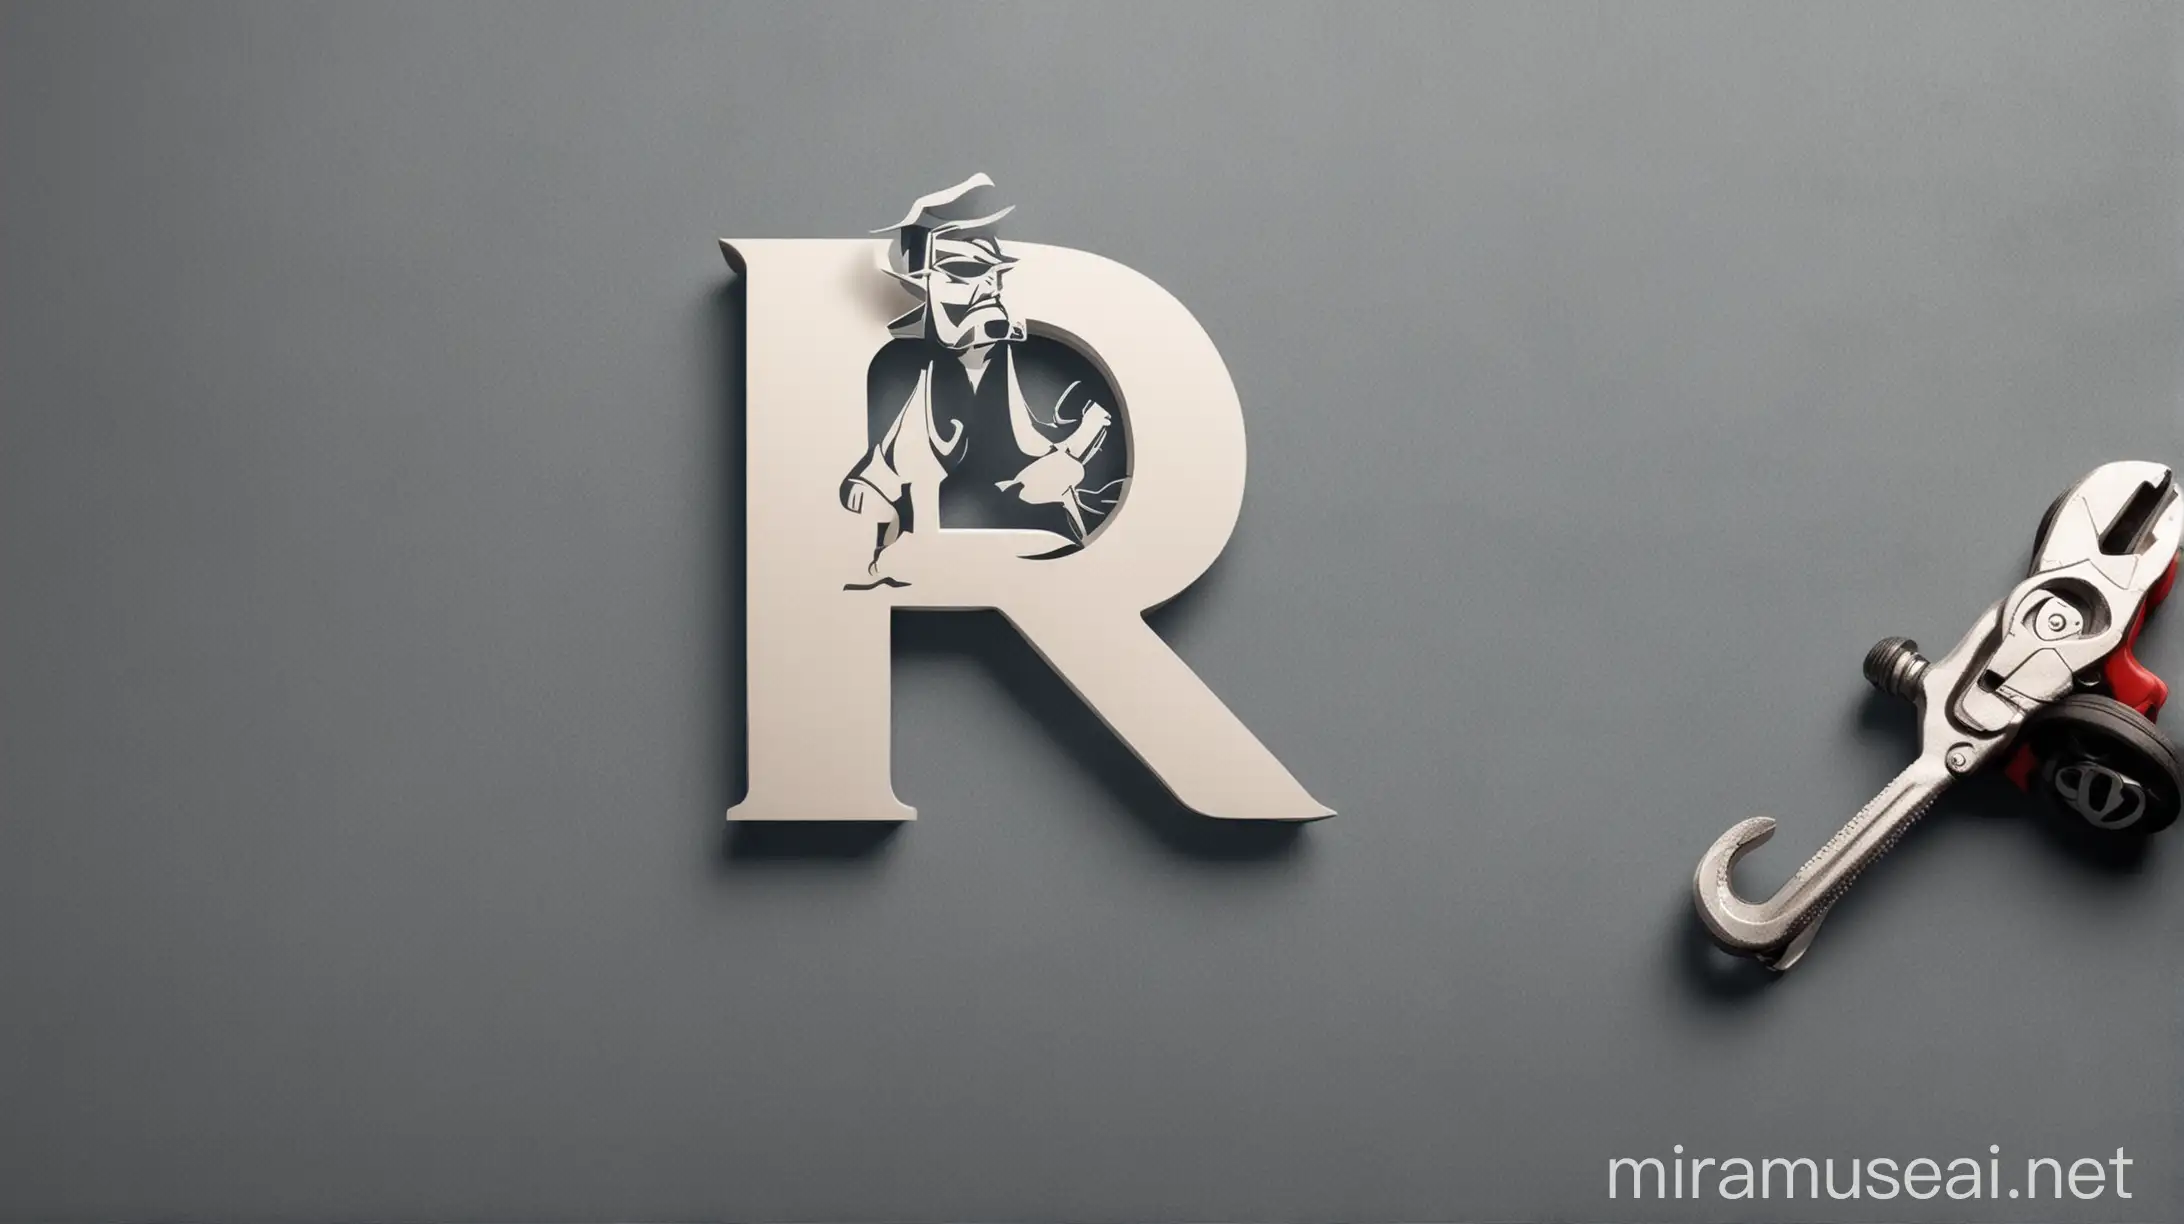 قم بتصميم شعار يحتوي على حرف R بلانجليزي واضف صورة سياره وشخص يحمل مفك براغي